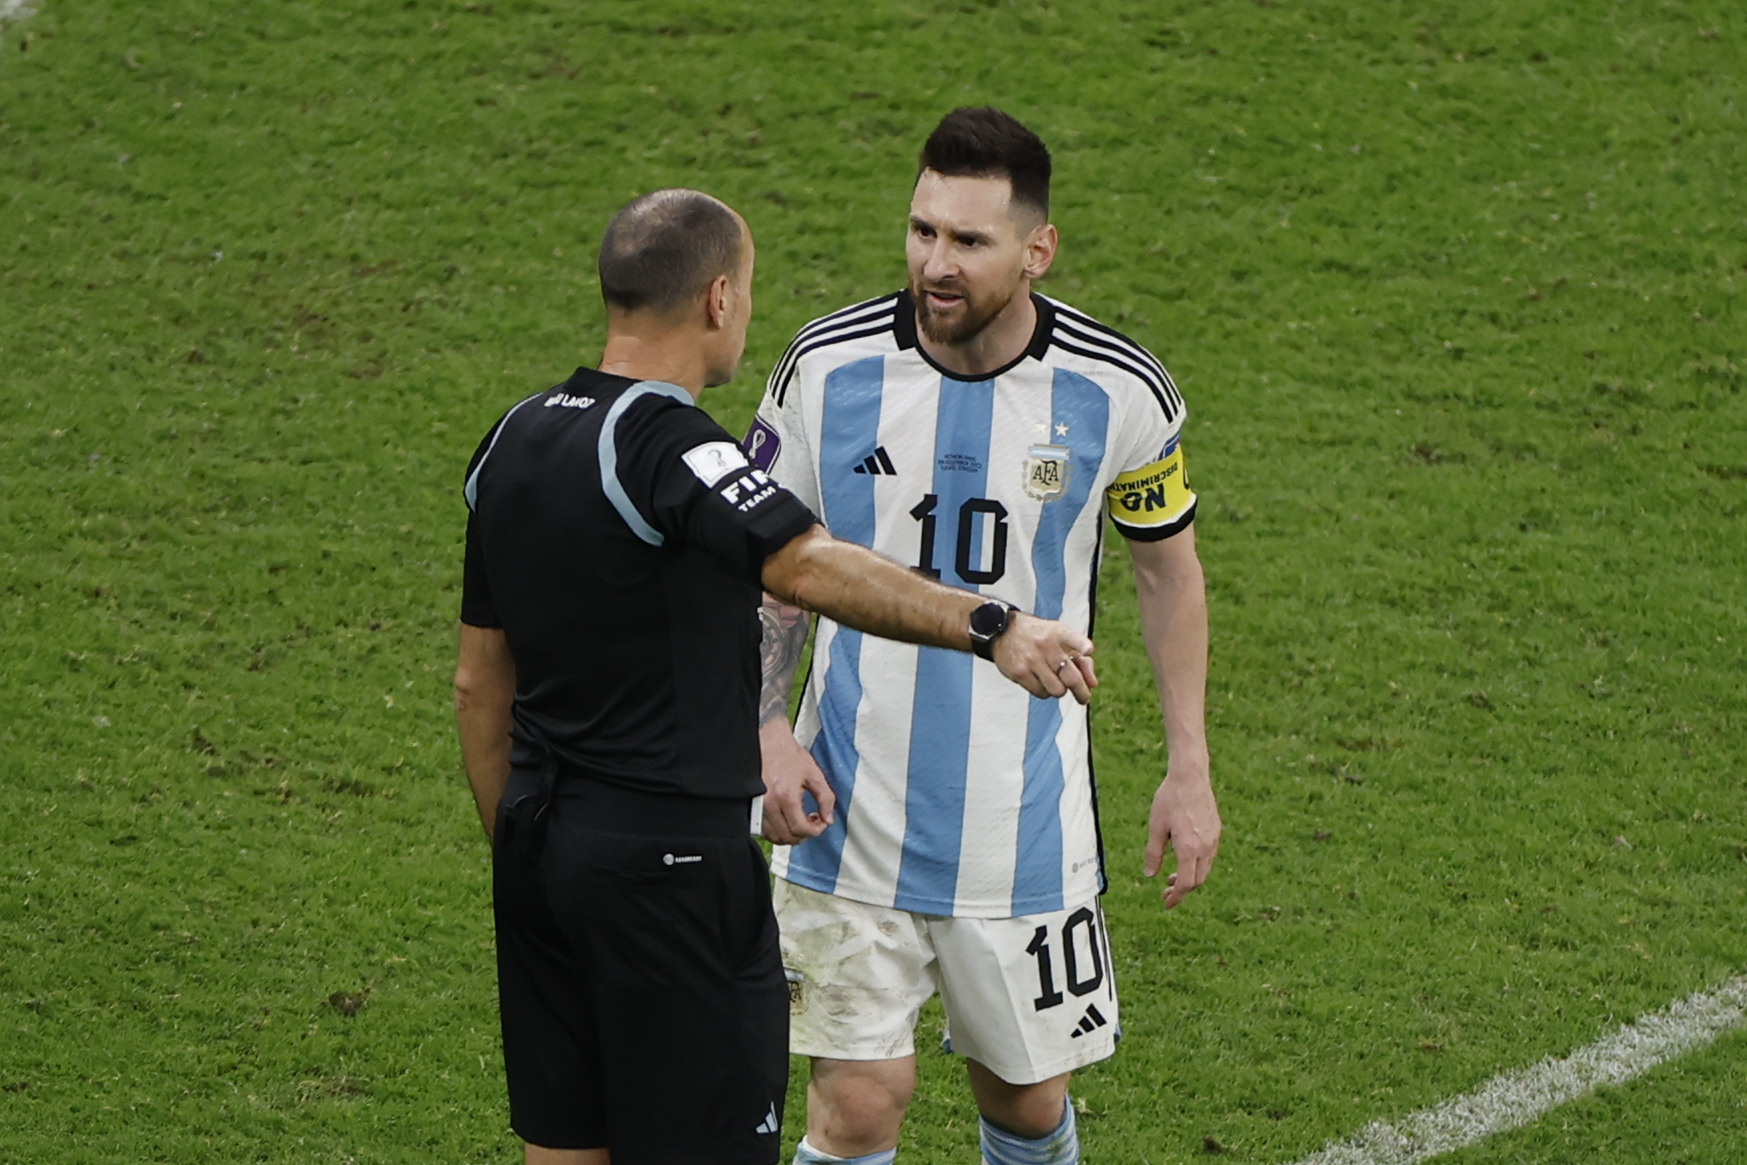 Juiz que irritou Messi não apitará mais jogos da Copa do Catar